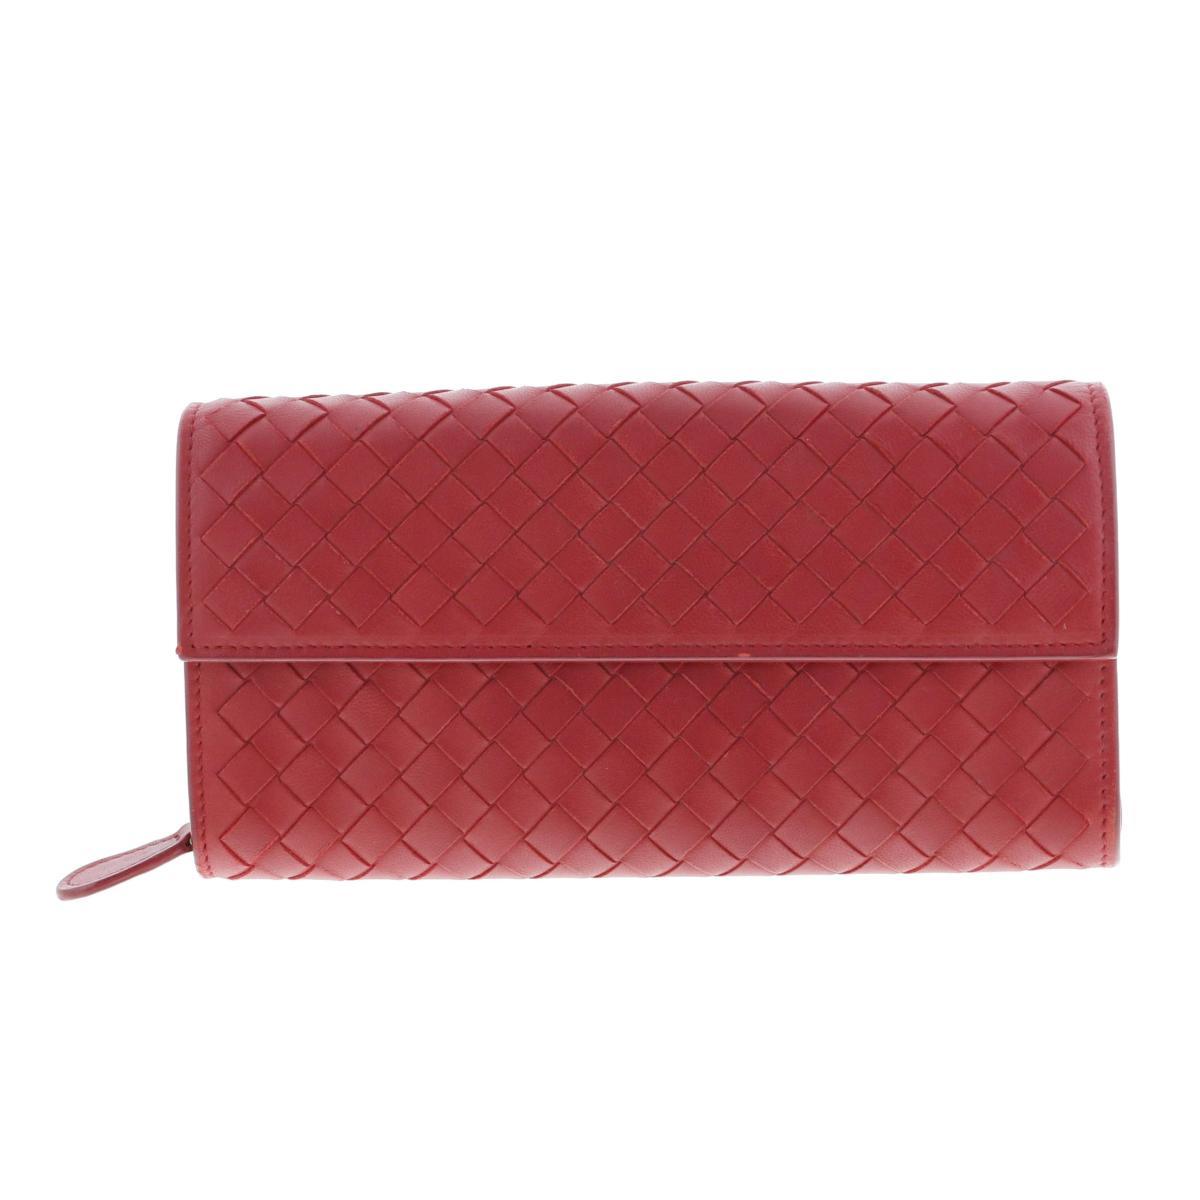 BOTTEGA VENETA ボッテガヴェネタ 財布 イントレチャート 長財布(小銭入無) Red Leather 二つ折り長財布